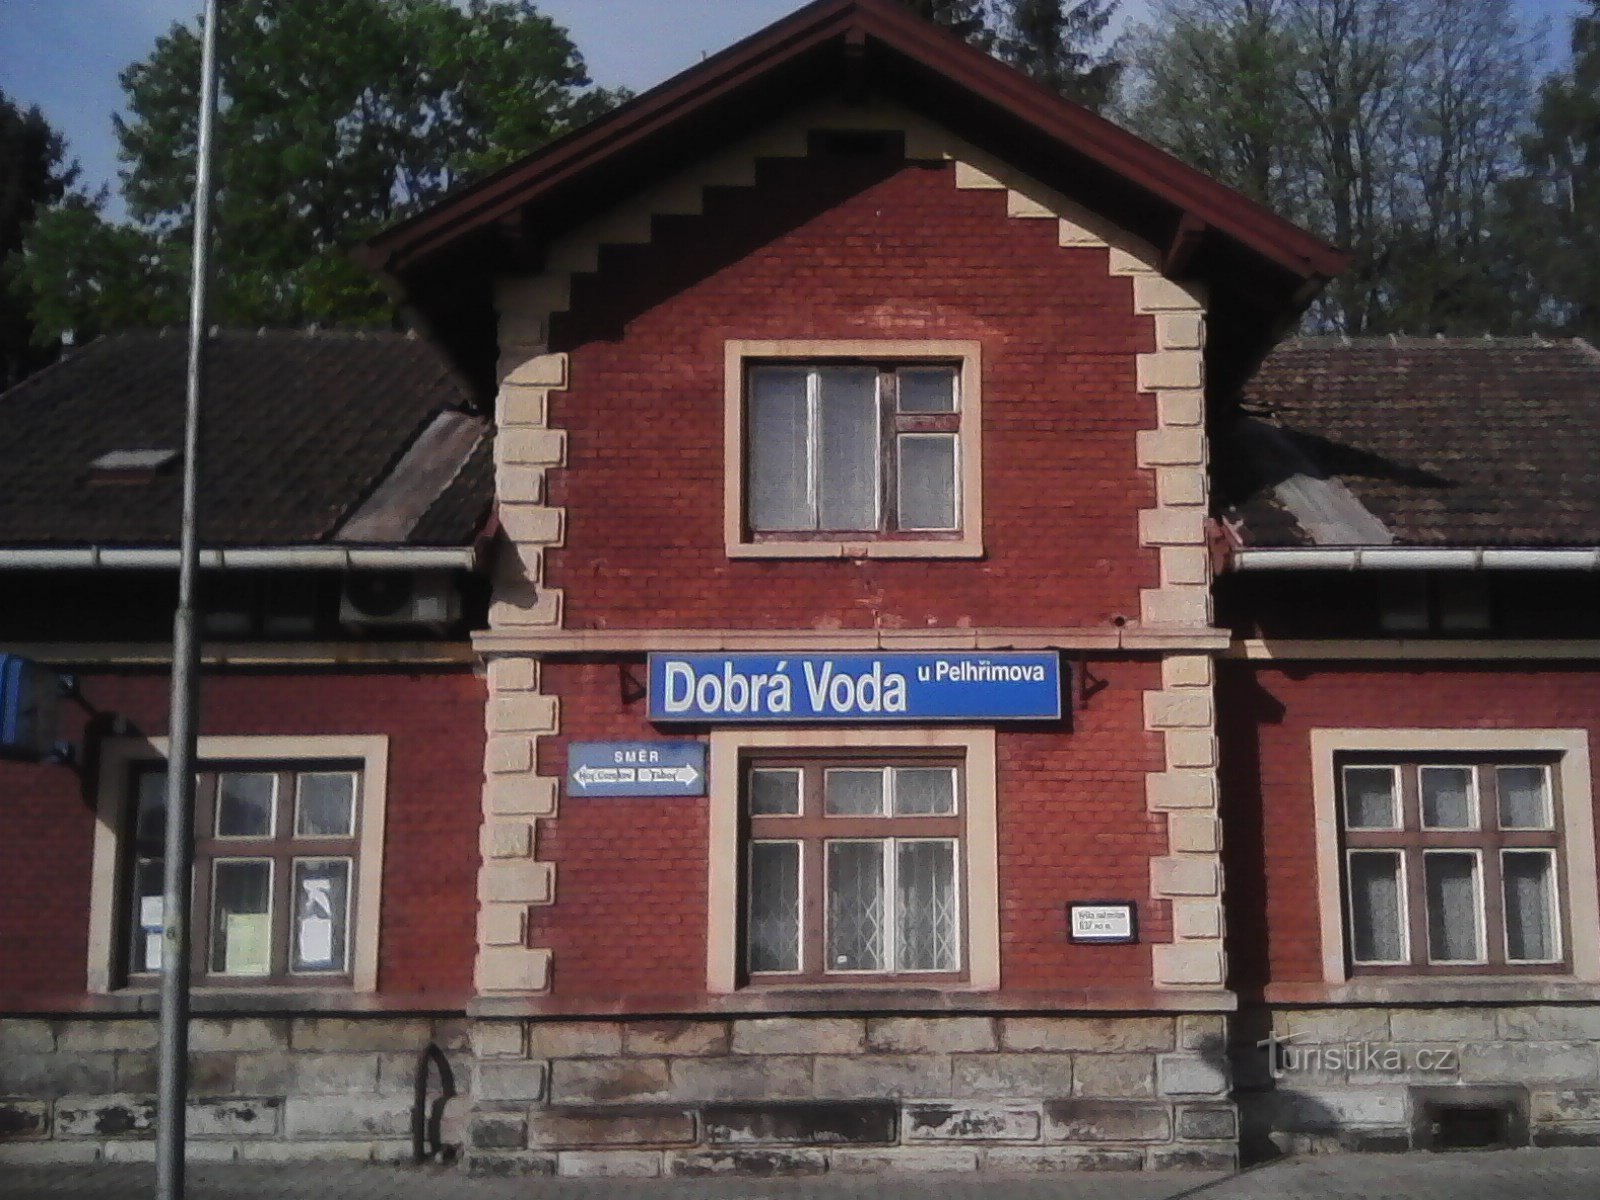 1. Station in Dobrá Voda - het startpunt van de bedevaart.